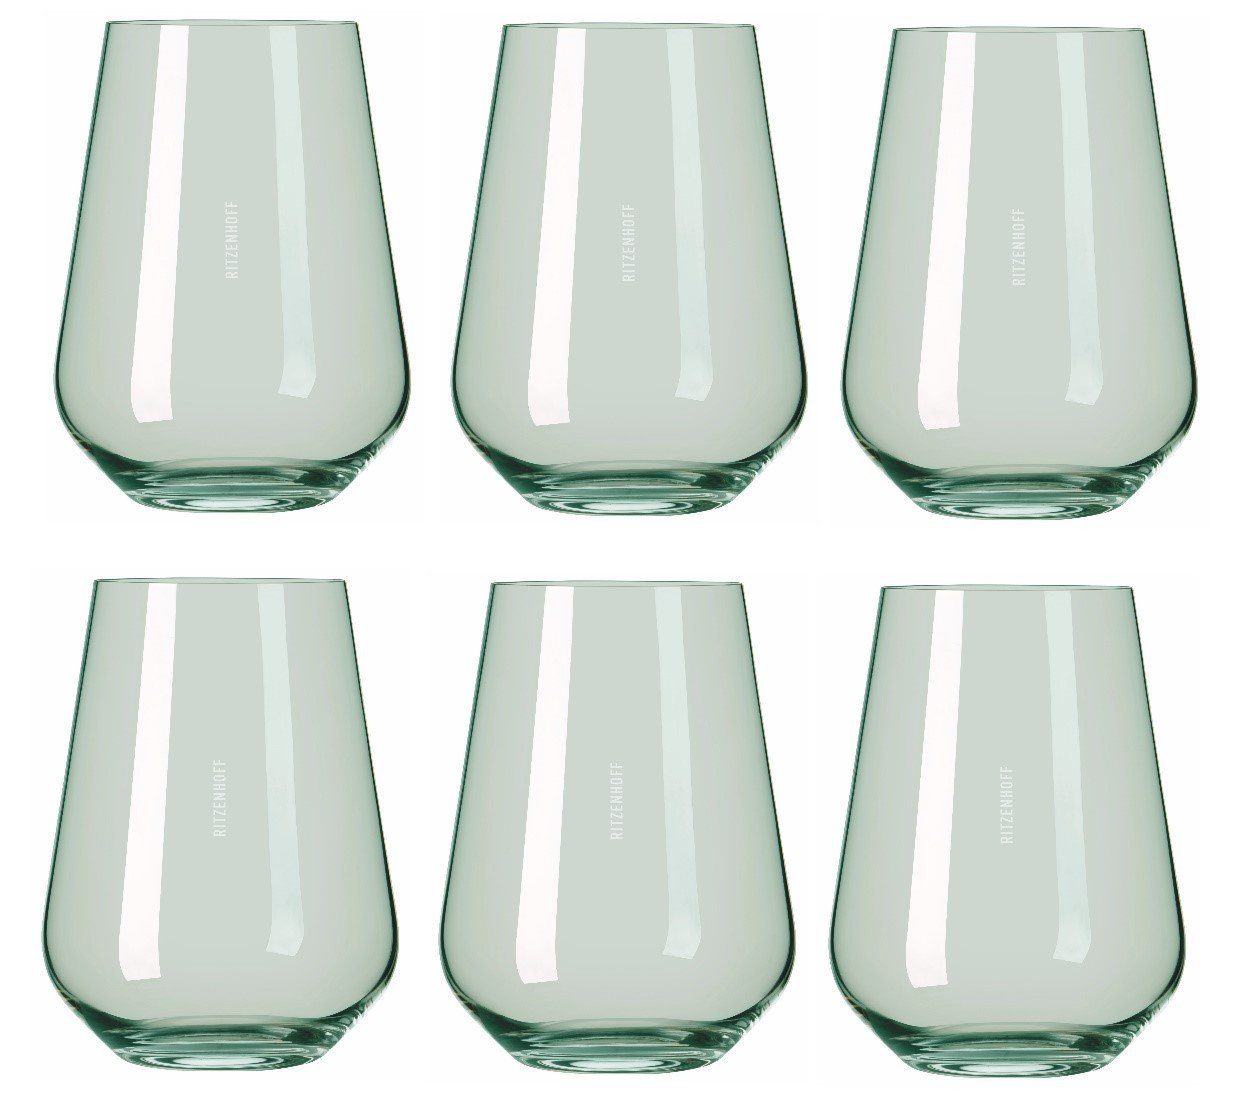 Ritzenhoff Glas Fjordlicht, Glas, Grün H:12.4cm D:9.3cm Glas, Passende  Weißwein‐ und Rotweingläser derselben Kollektion erhältlich